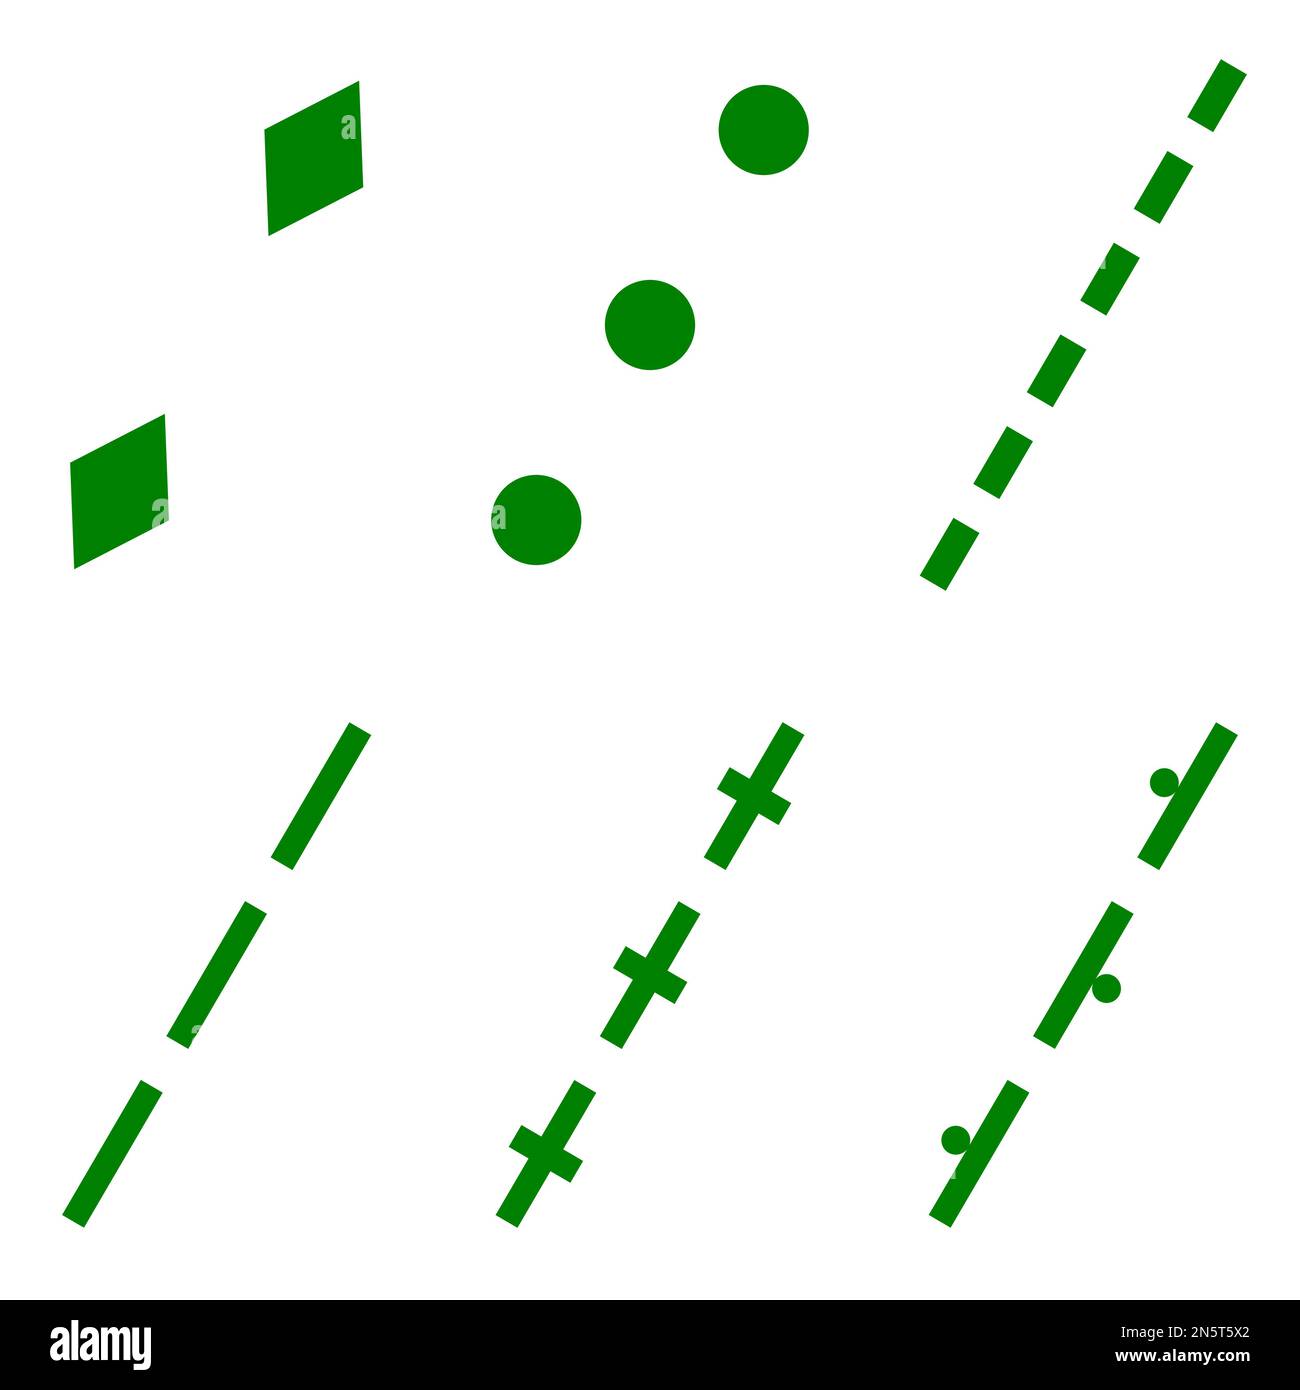 Un insieme di sei immagini vettoriali verdi e bianche di sentieri e sentieri di bridle presenti su una mappa. Illustrazione Vettoriale